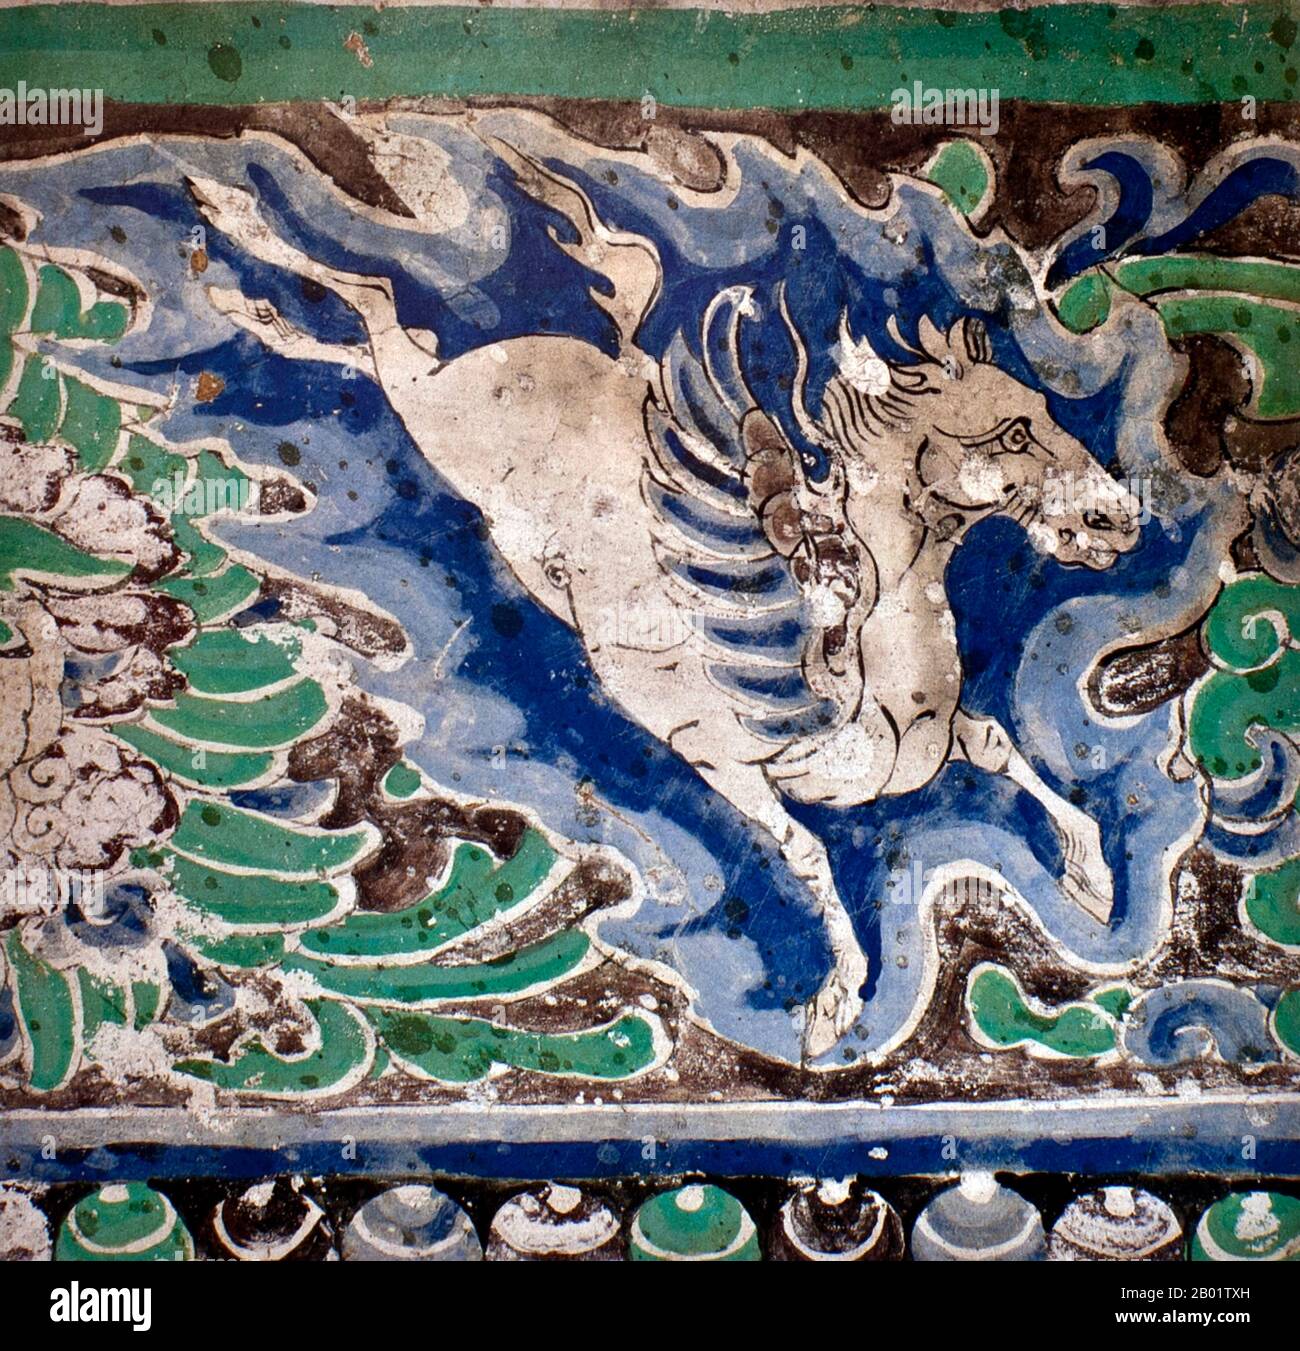 China: Fresko eines geflügelten Pferdes, Cave 10, Yulin Caves, Western Xia Dynastie (1038–1227). Die Yulin-Höhlen sind ein buddhistischer Höhlentempelkomplex im Guazhou County, Provinz Gansu, China. Der Standort liegt etwa 100 km östlich der Oasenstadt Dunhuang und der Mogao-Höhlen. Seinen Namen hat er von den gleichnamigen Ulmen, die den Yulin River säumen, der durch das Gelände fließt und die beiden Klippen trennt, von denen die Höhlen ausgegraben wurden. Die 42 Höhlen beherbergen etwa 250 polychrome Statuen und 4.200 Quadratmeter Wandmalereien aus der Tang-Dynastie bis zur Yuan-Dynastie. Stockfoto